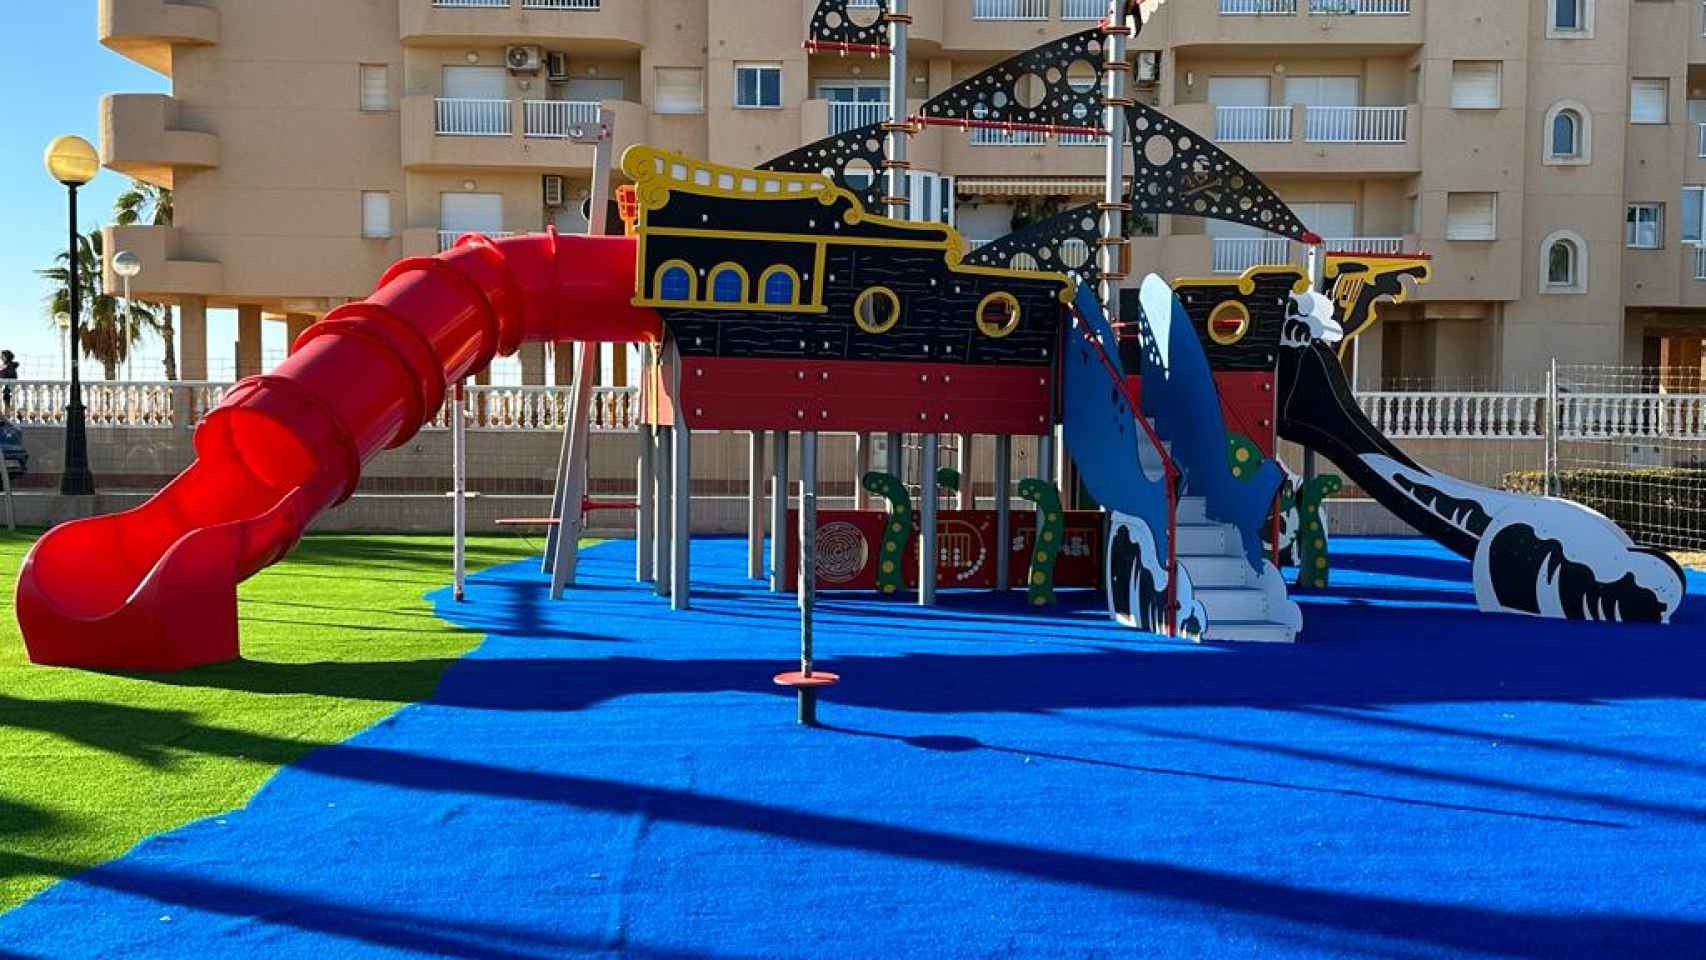 El nuevo Parque Mistral ya está disponible para los niños en La Manga del Mar Menor.